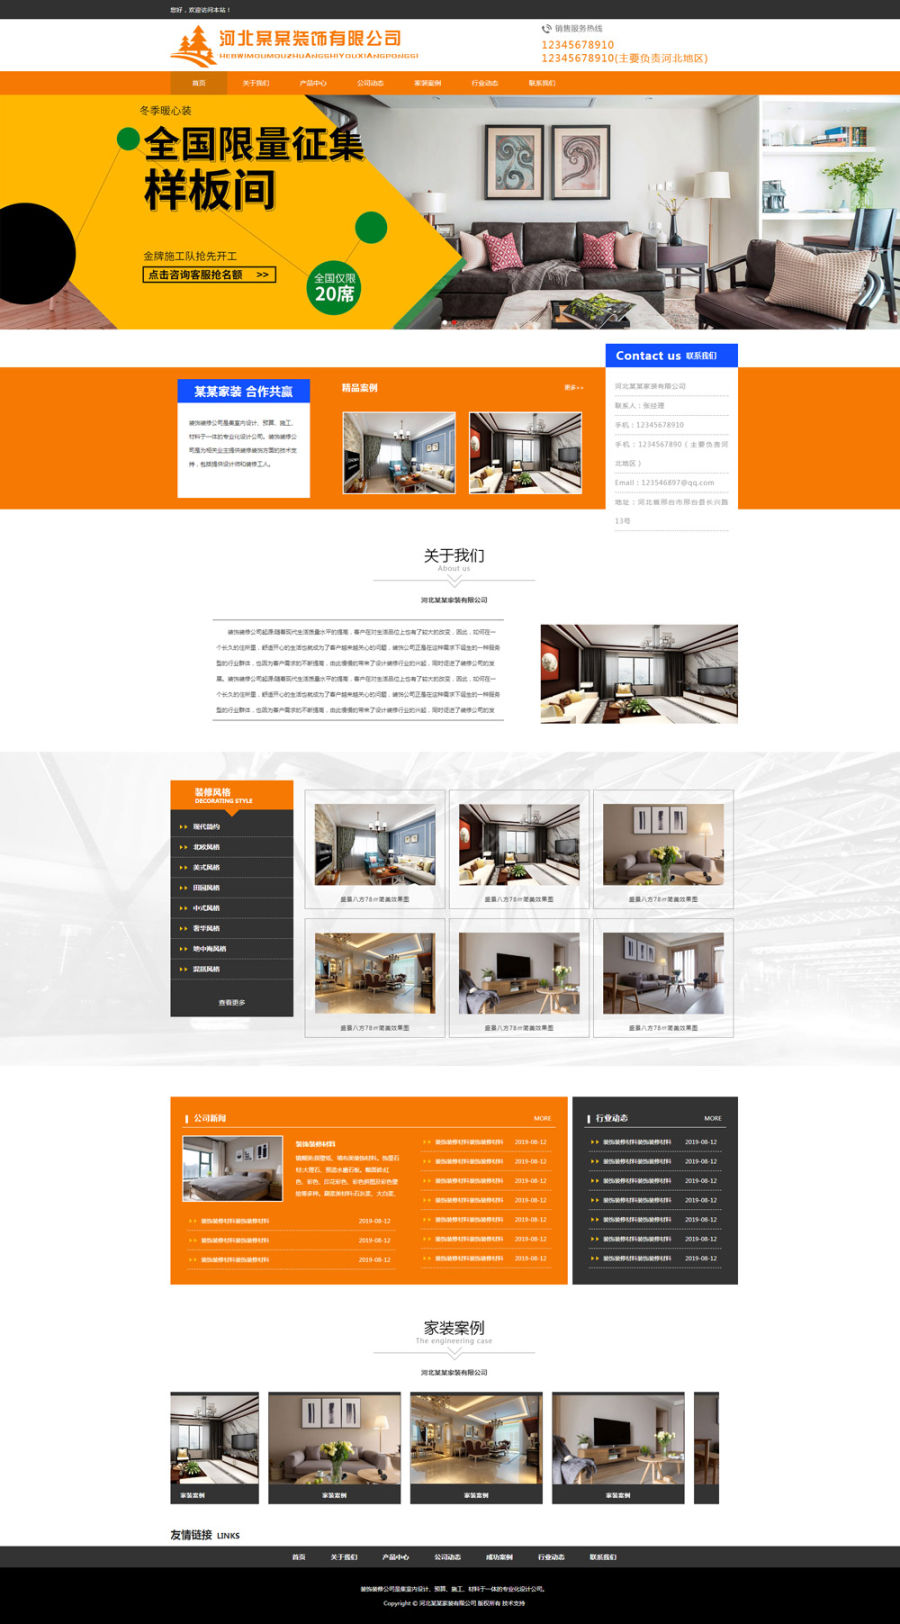 橙色大气的家装装饰公司简介案例展示网站模板